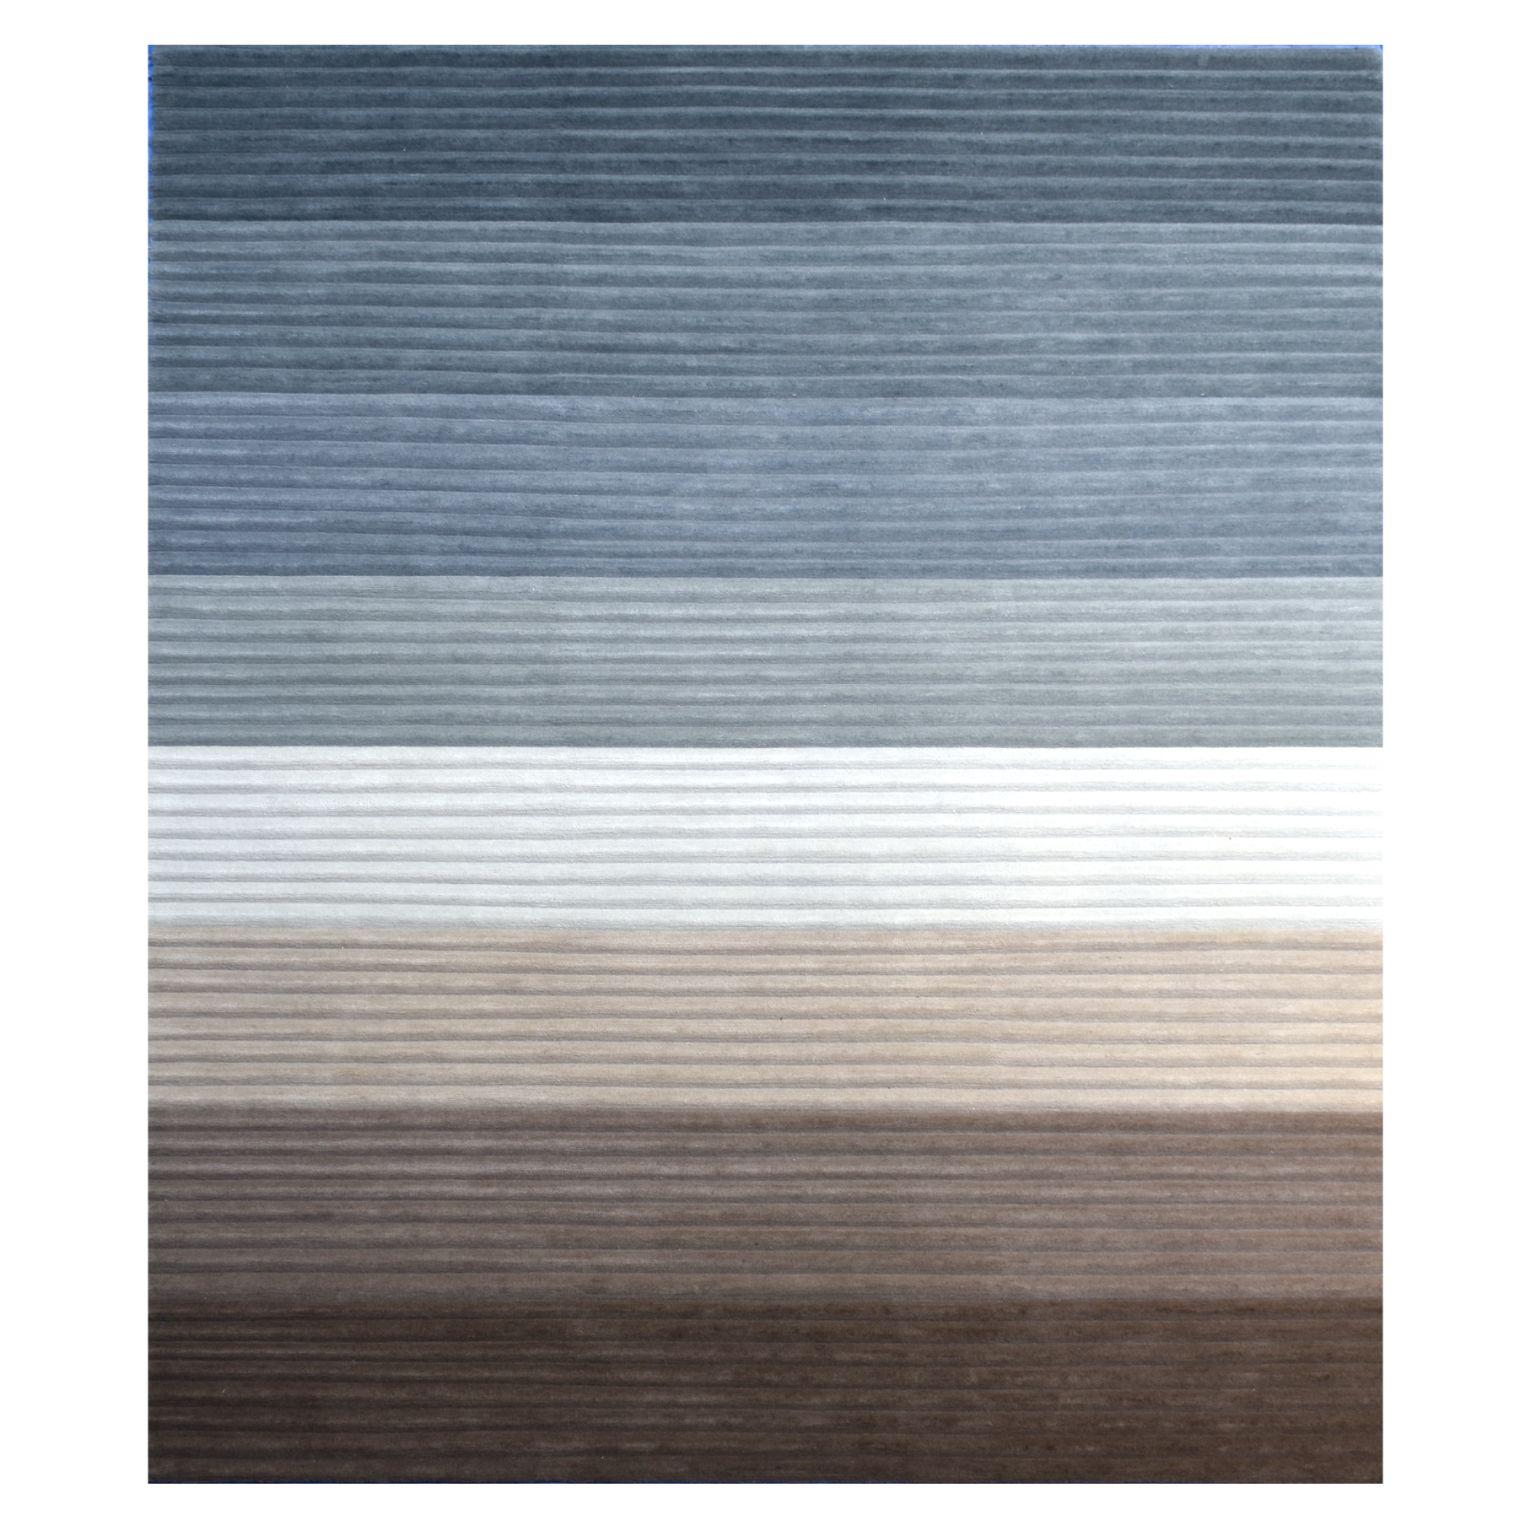 Grand tapis en velours côtelé d'Art & Loom
Dimensions : D 304,8 x H 426,7 cm
Matériaux : 100% laine de Nouvelle-Zélande
Qualité (nœuds par pouce) : 100
Disponible également en différentes dimensions.

Samantha Gallacher a toujours eu un sens